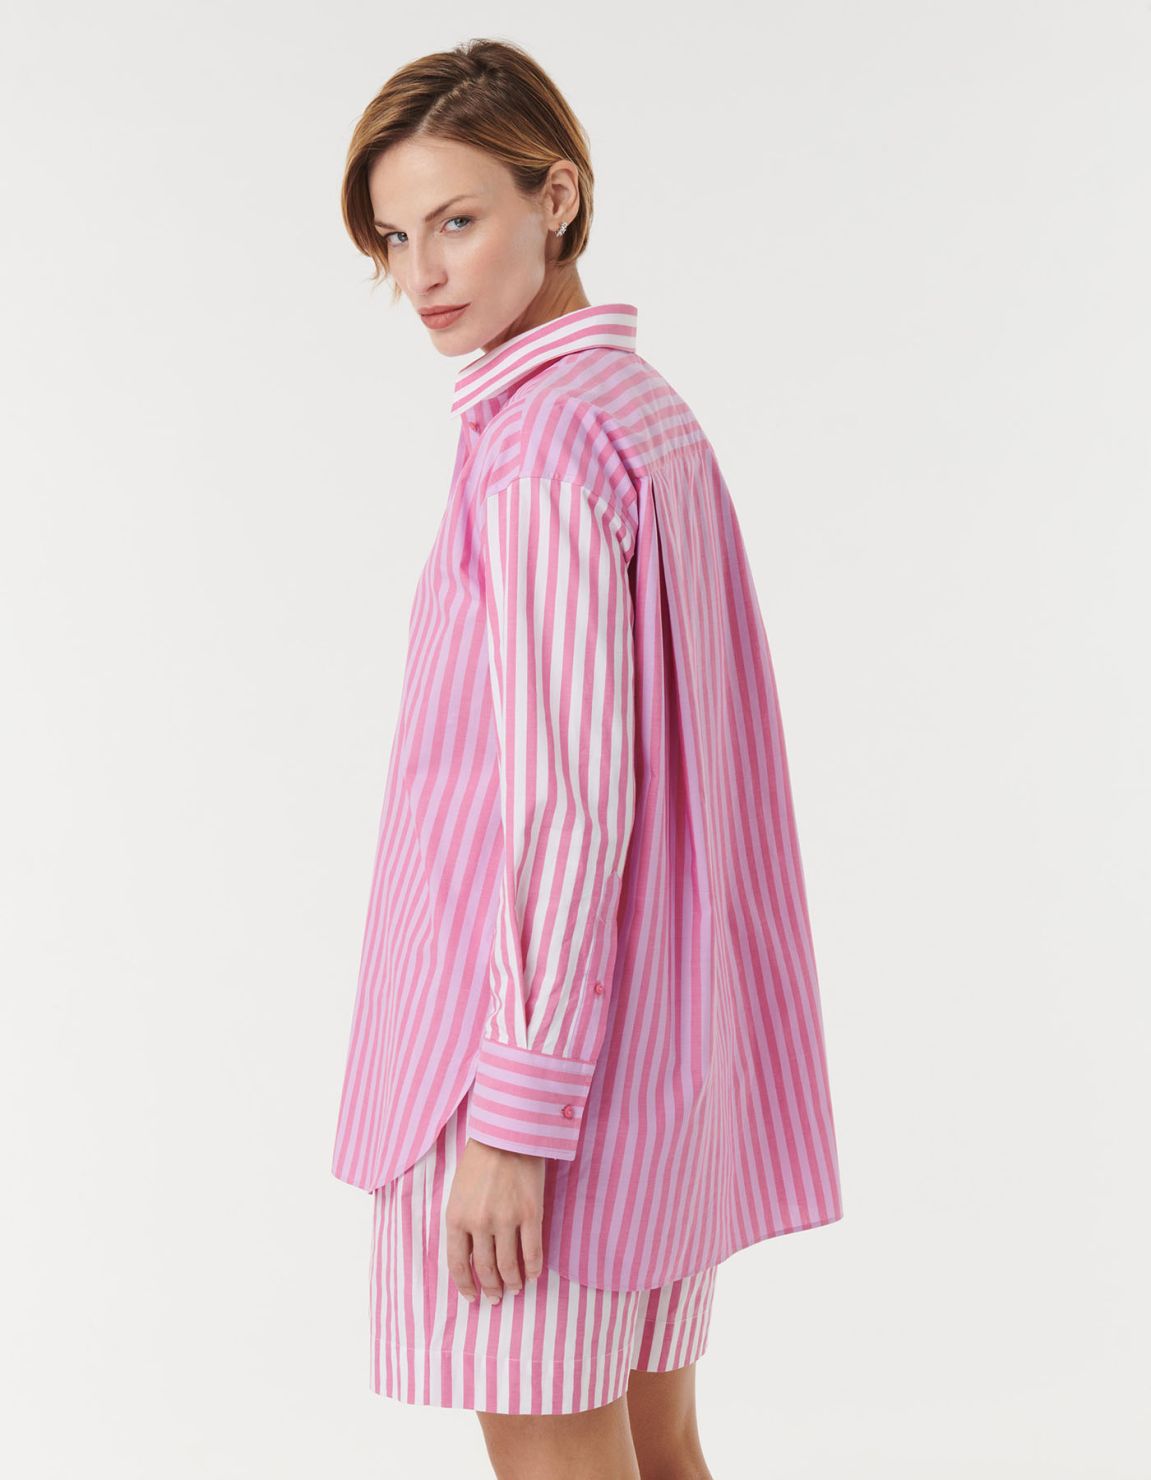 Shirt Dark Pink Cotton Stripe Over 5